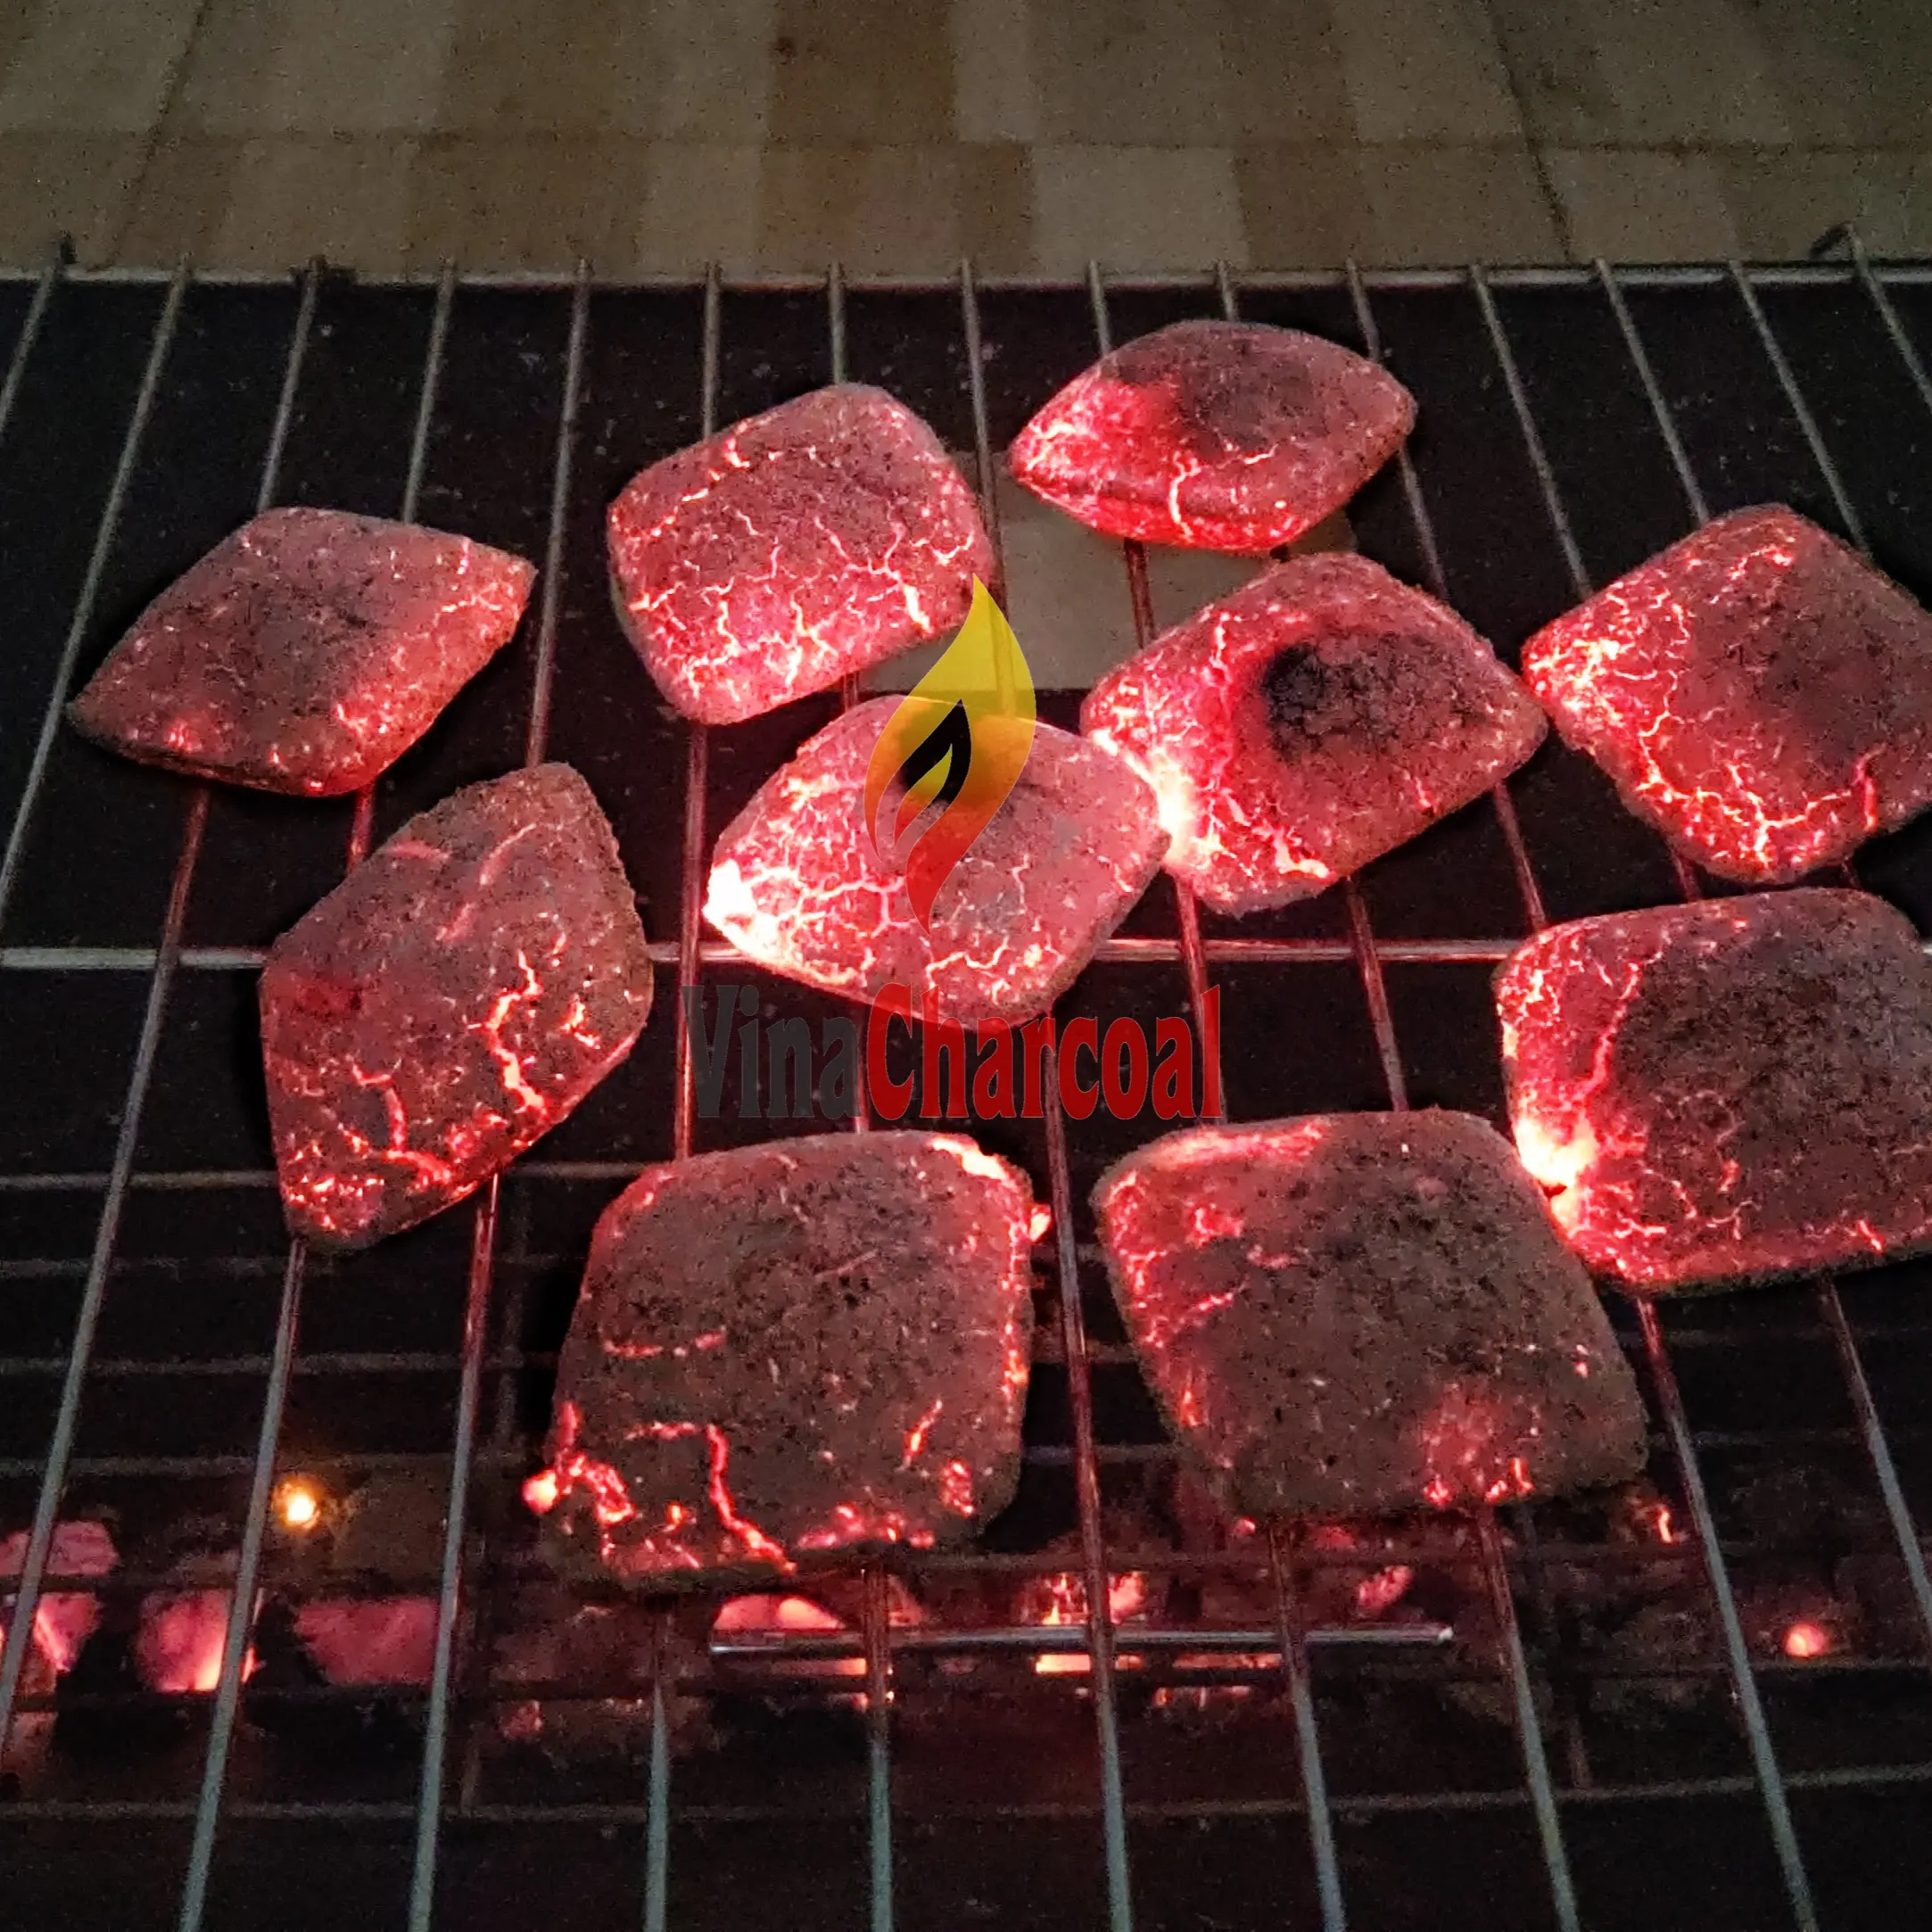 Incredibile combustione di bricchette di guscio di cocco a forma di uovo/cuscino per barbecue